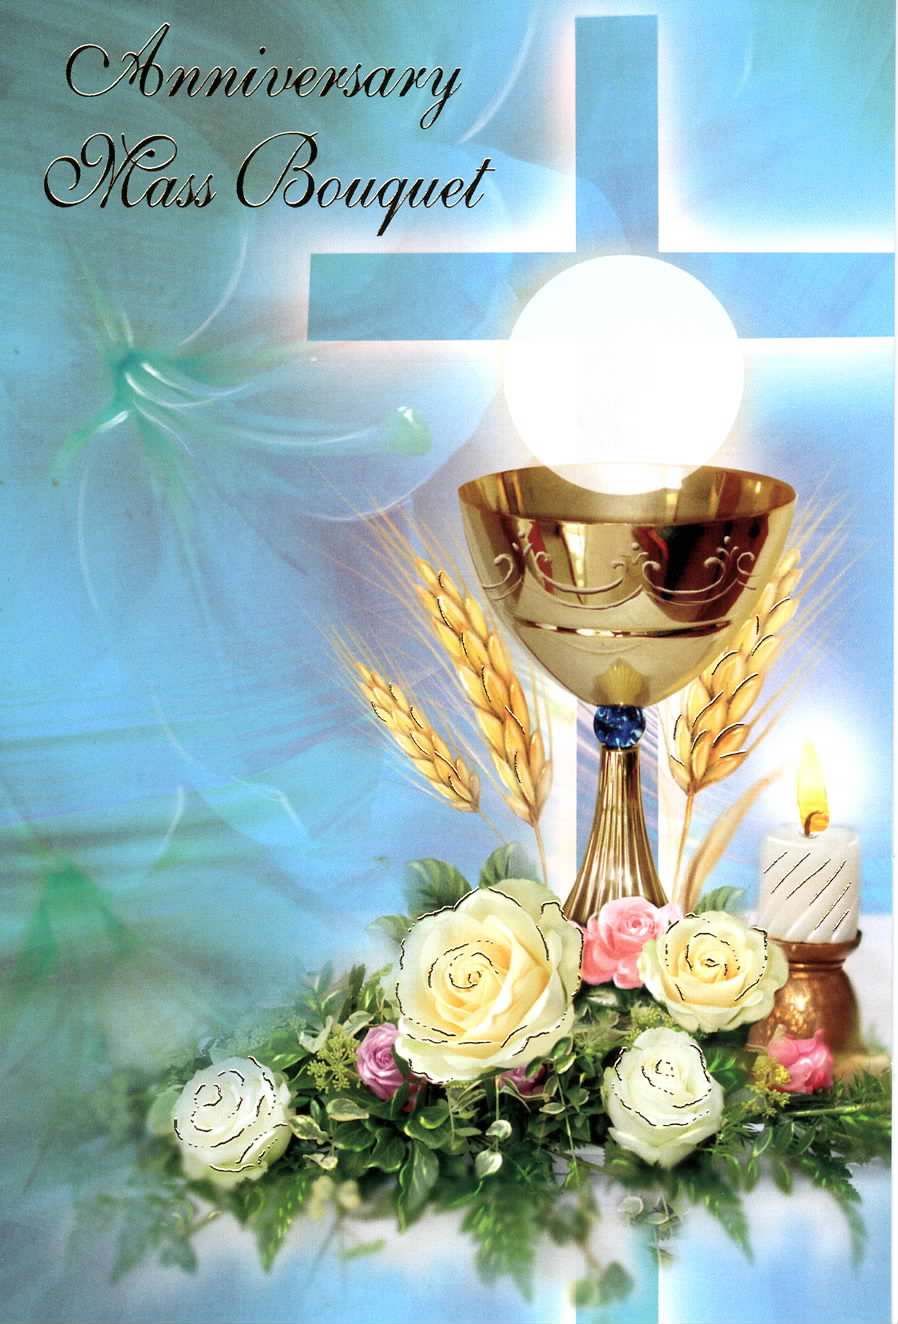 Share Mass Card online Enrolment - Anniversary Mass Bouquet RIP